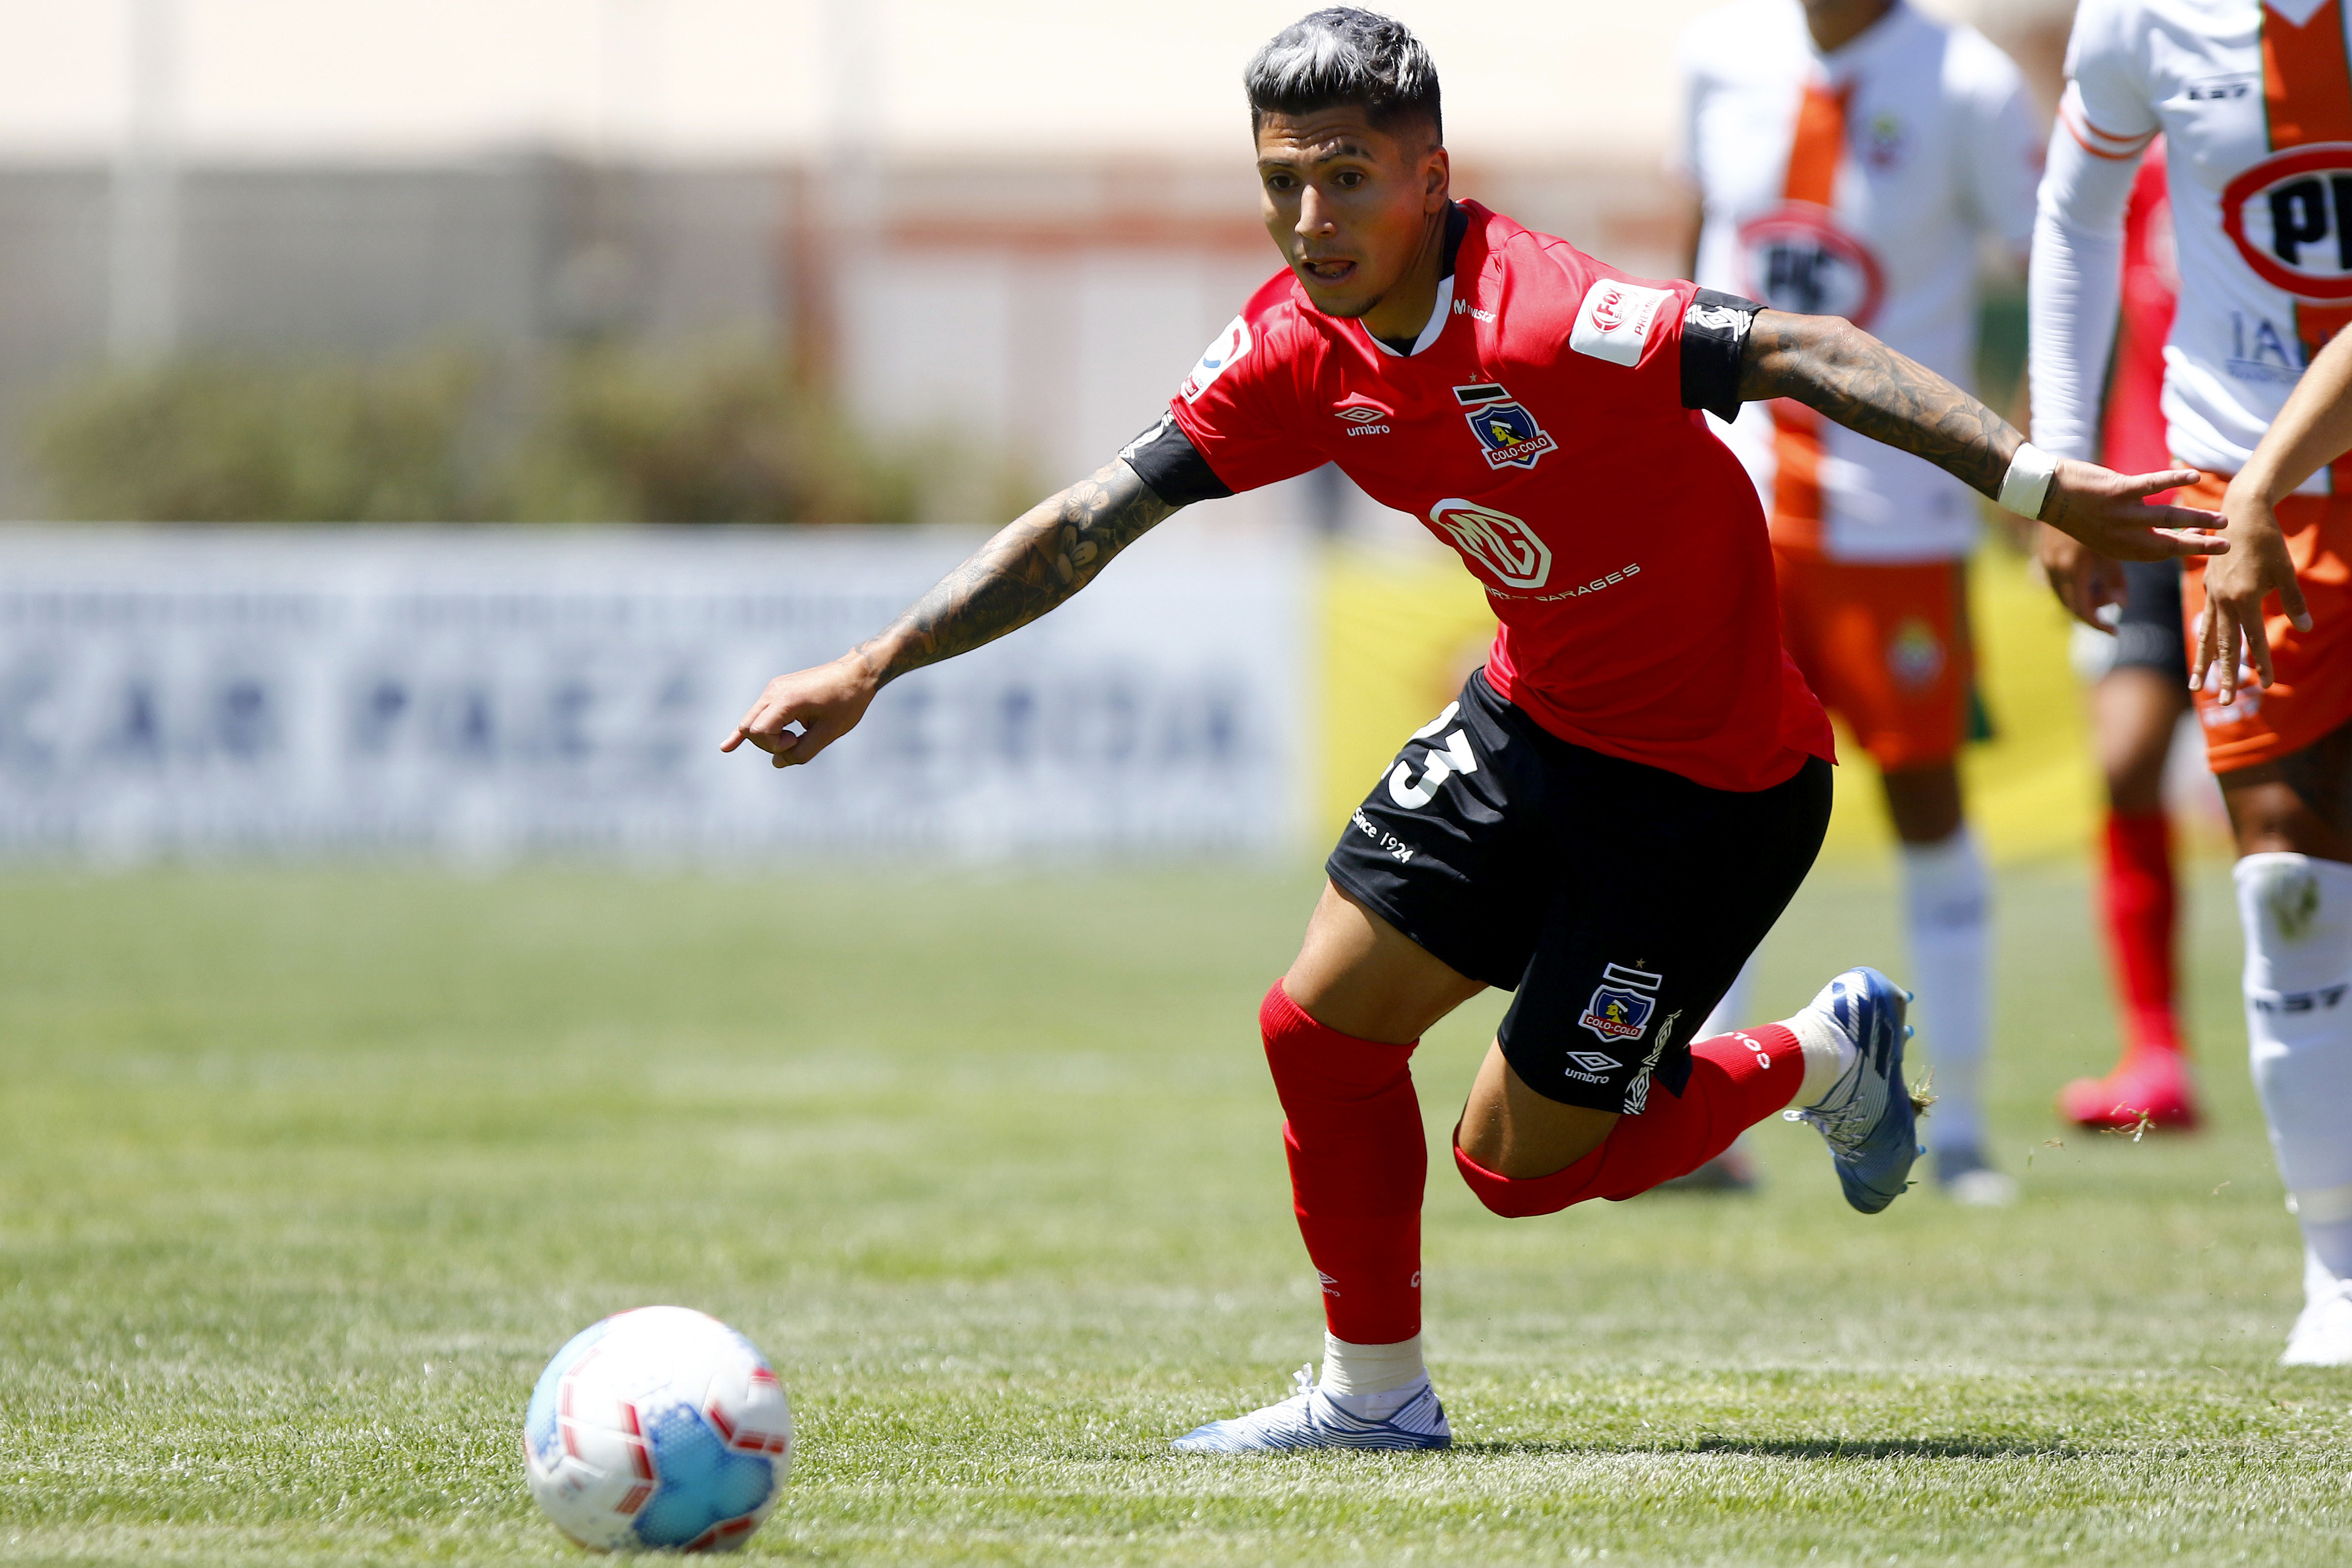 Brayan Vejar no pudo convencer en su regreso a Colo Colo tras su préstamo en Palestino. | Foto: Agencia UNO.